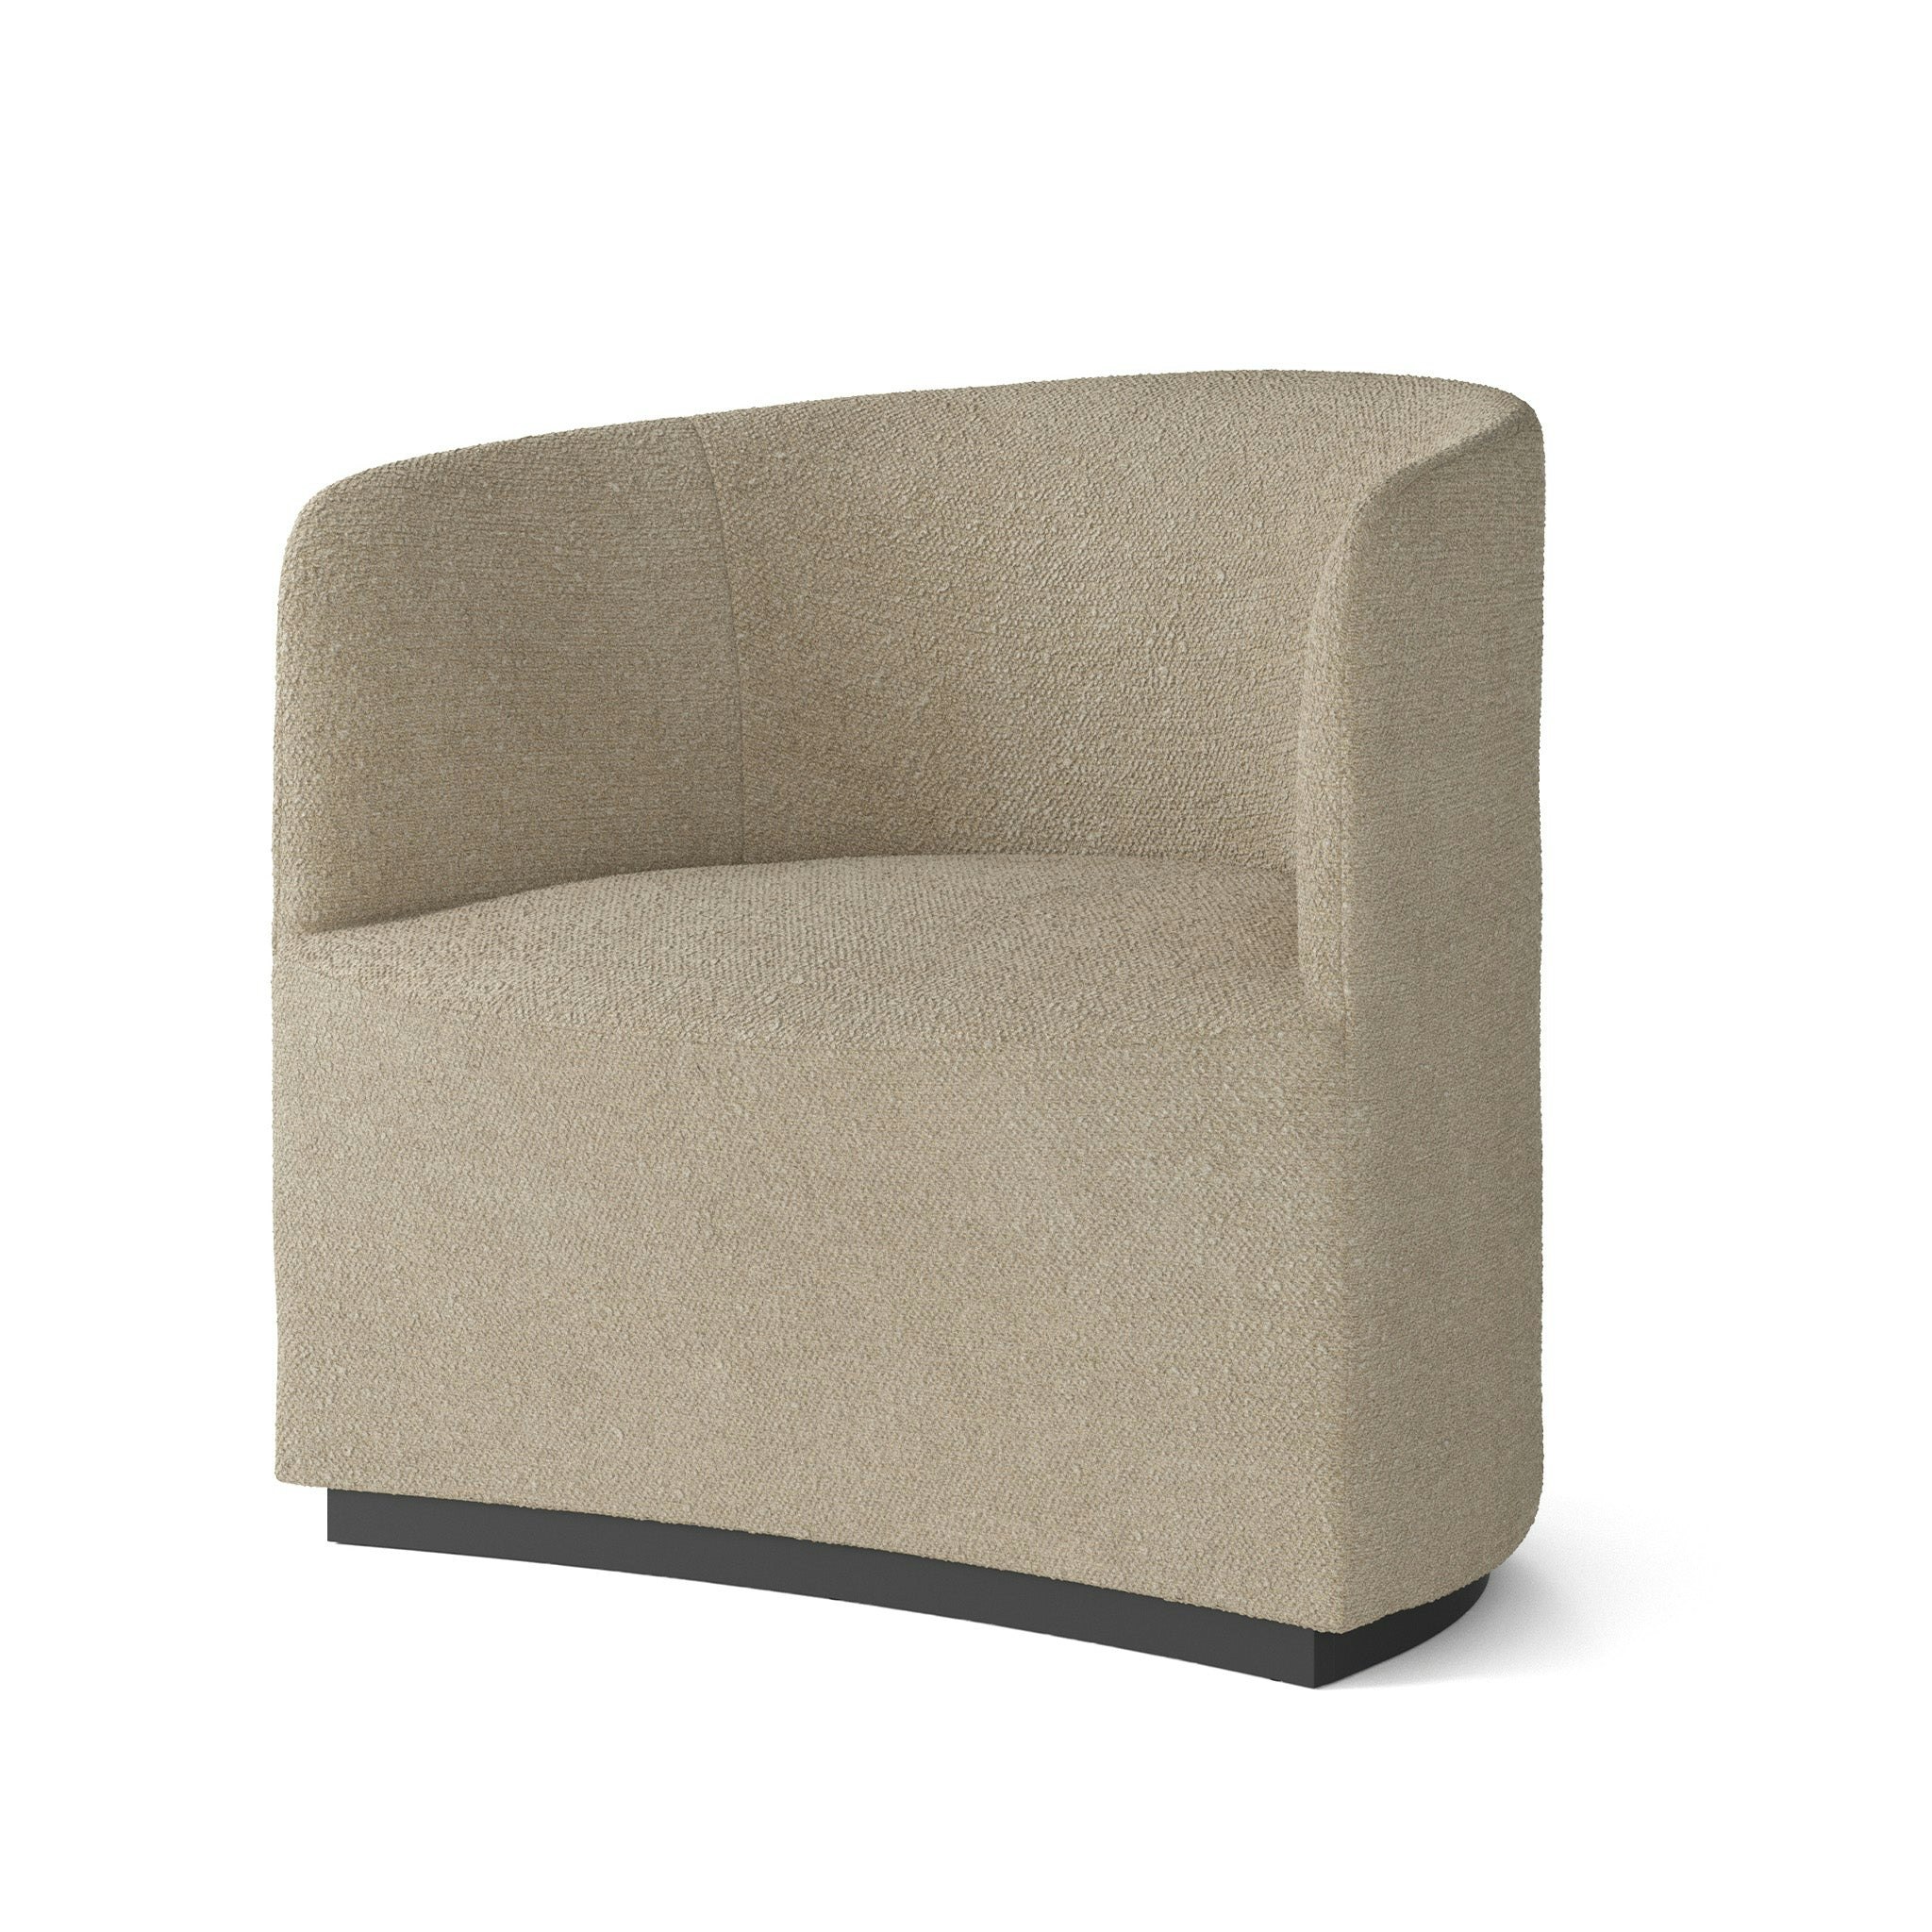 Tearoom Lounge Chair by Menu